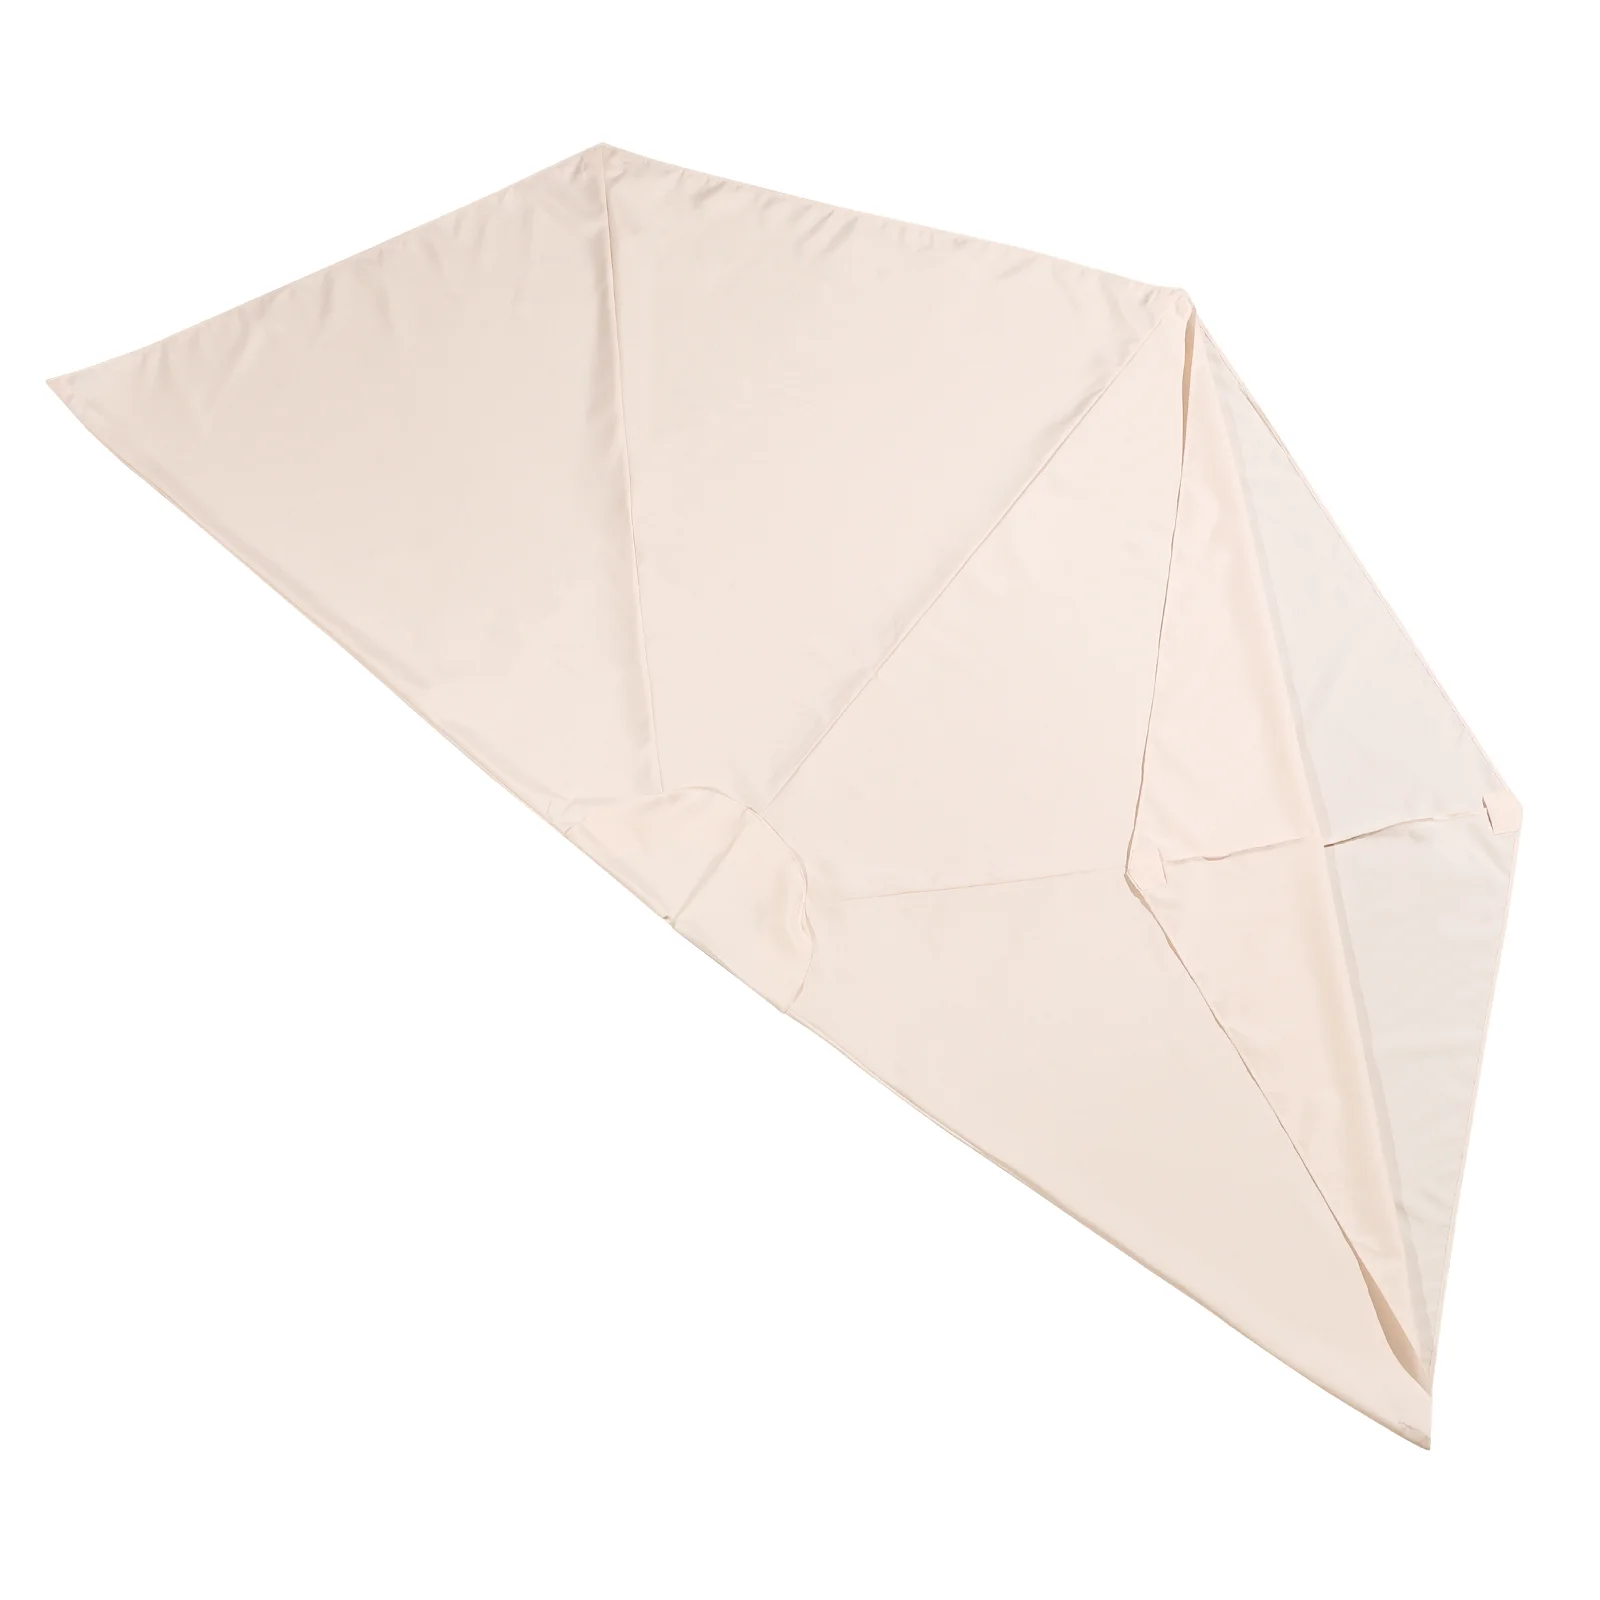 

Зонт для внутреннего дворика, диаметром 8 ребер, настольные зонтики, наружный солнцезащитный чехол